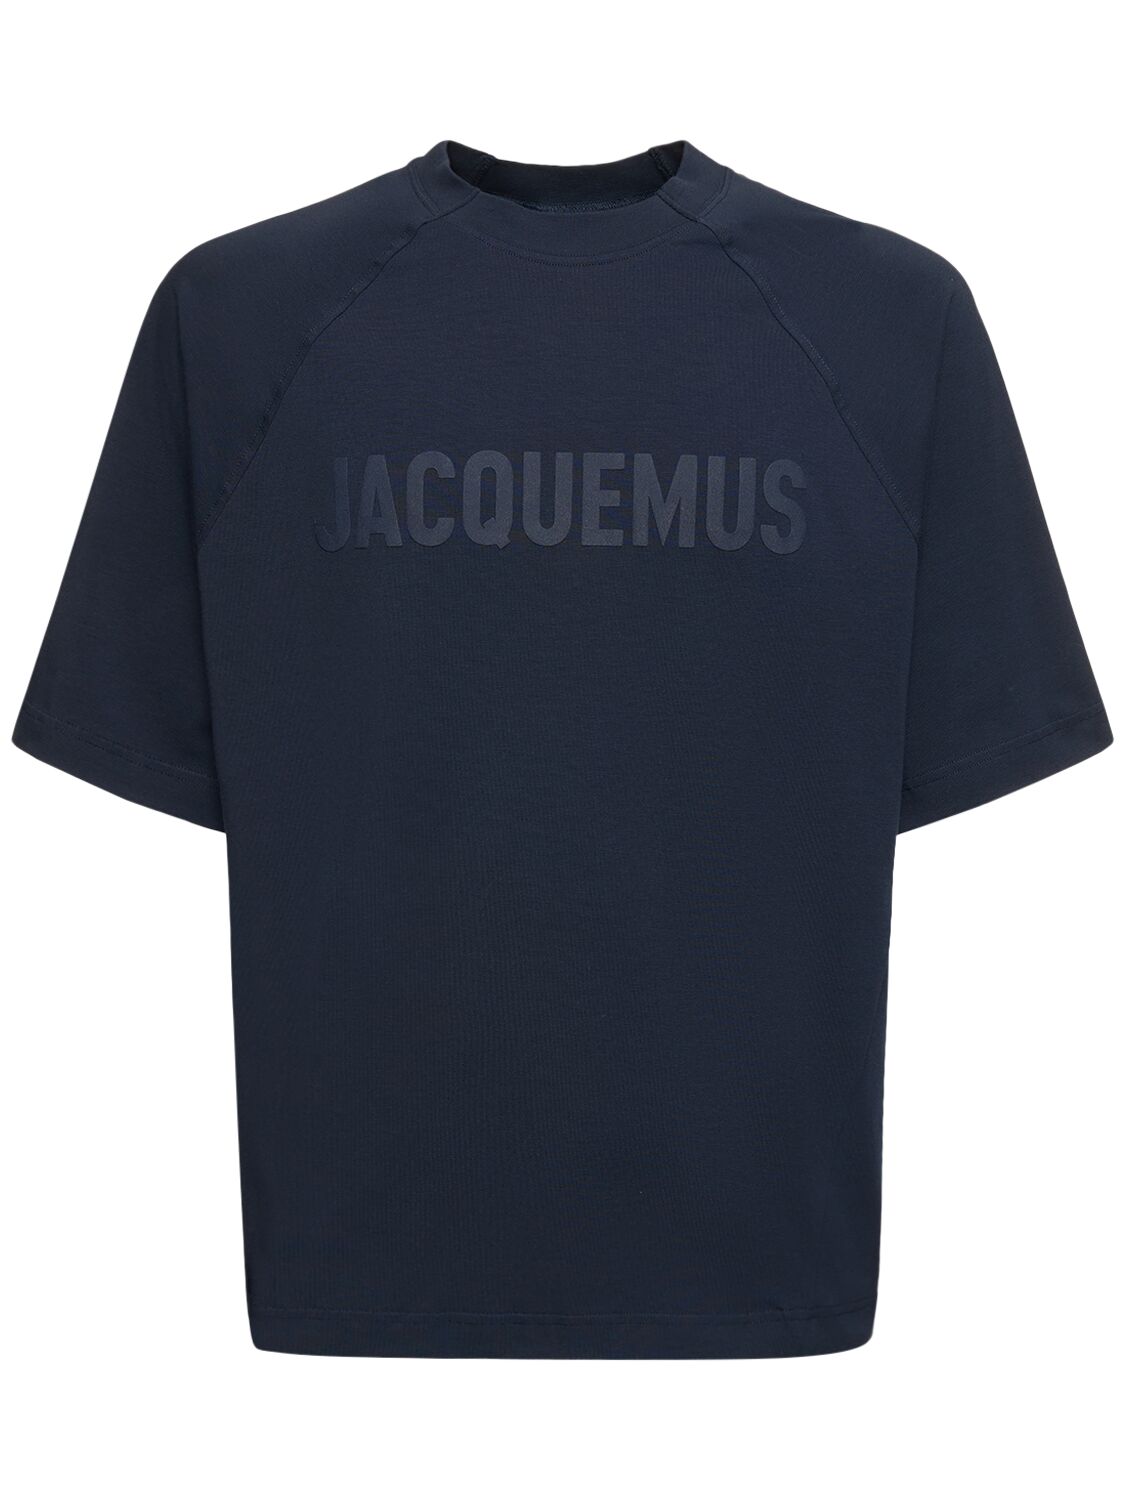 T-shirt Le Tshirt Typo In Cotone - JACQUEMUS - Modalova